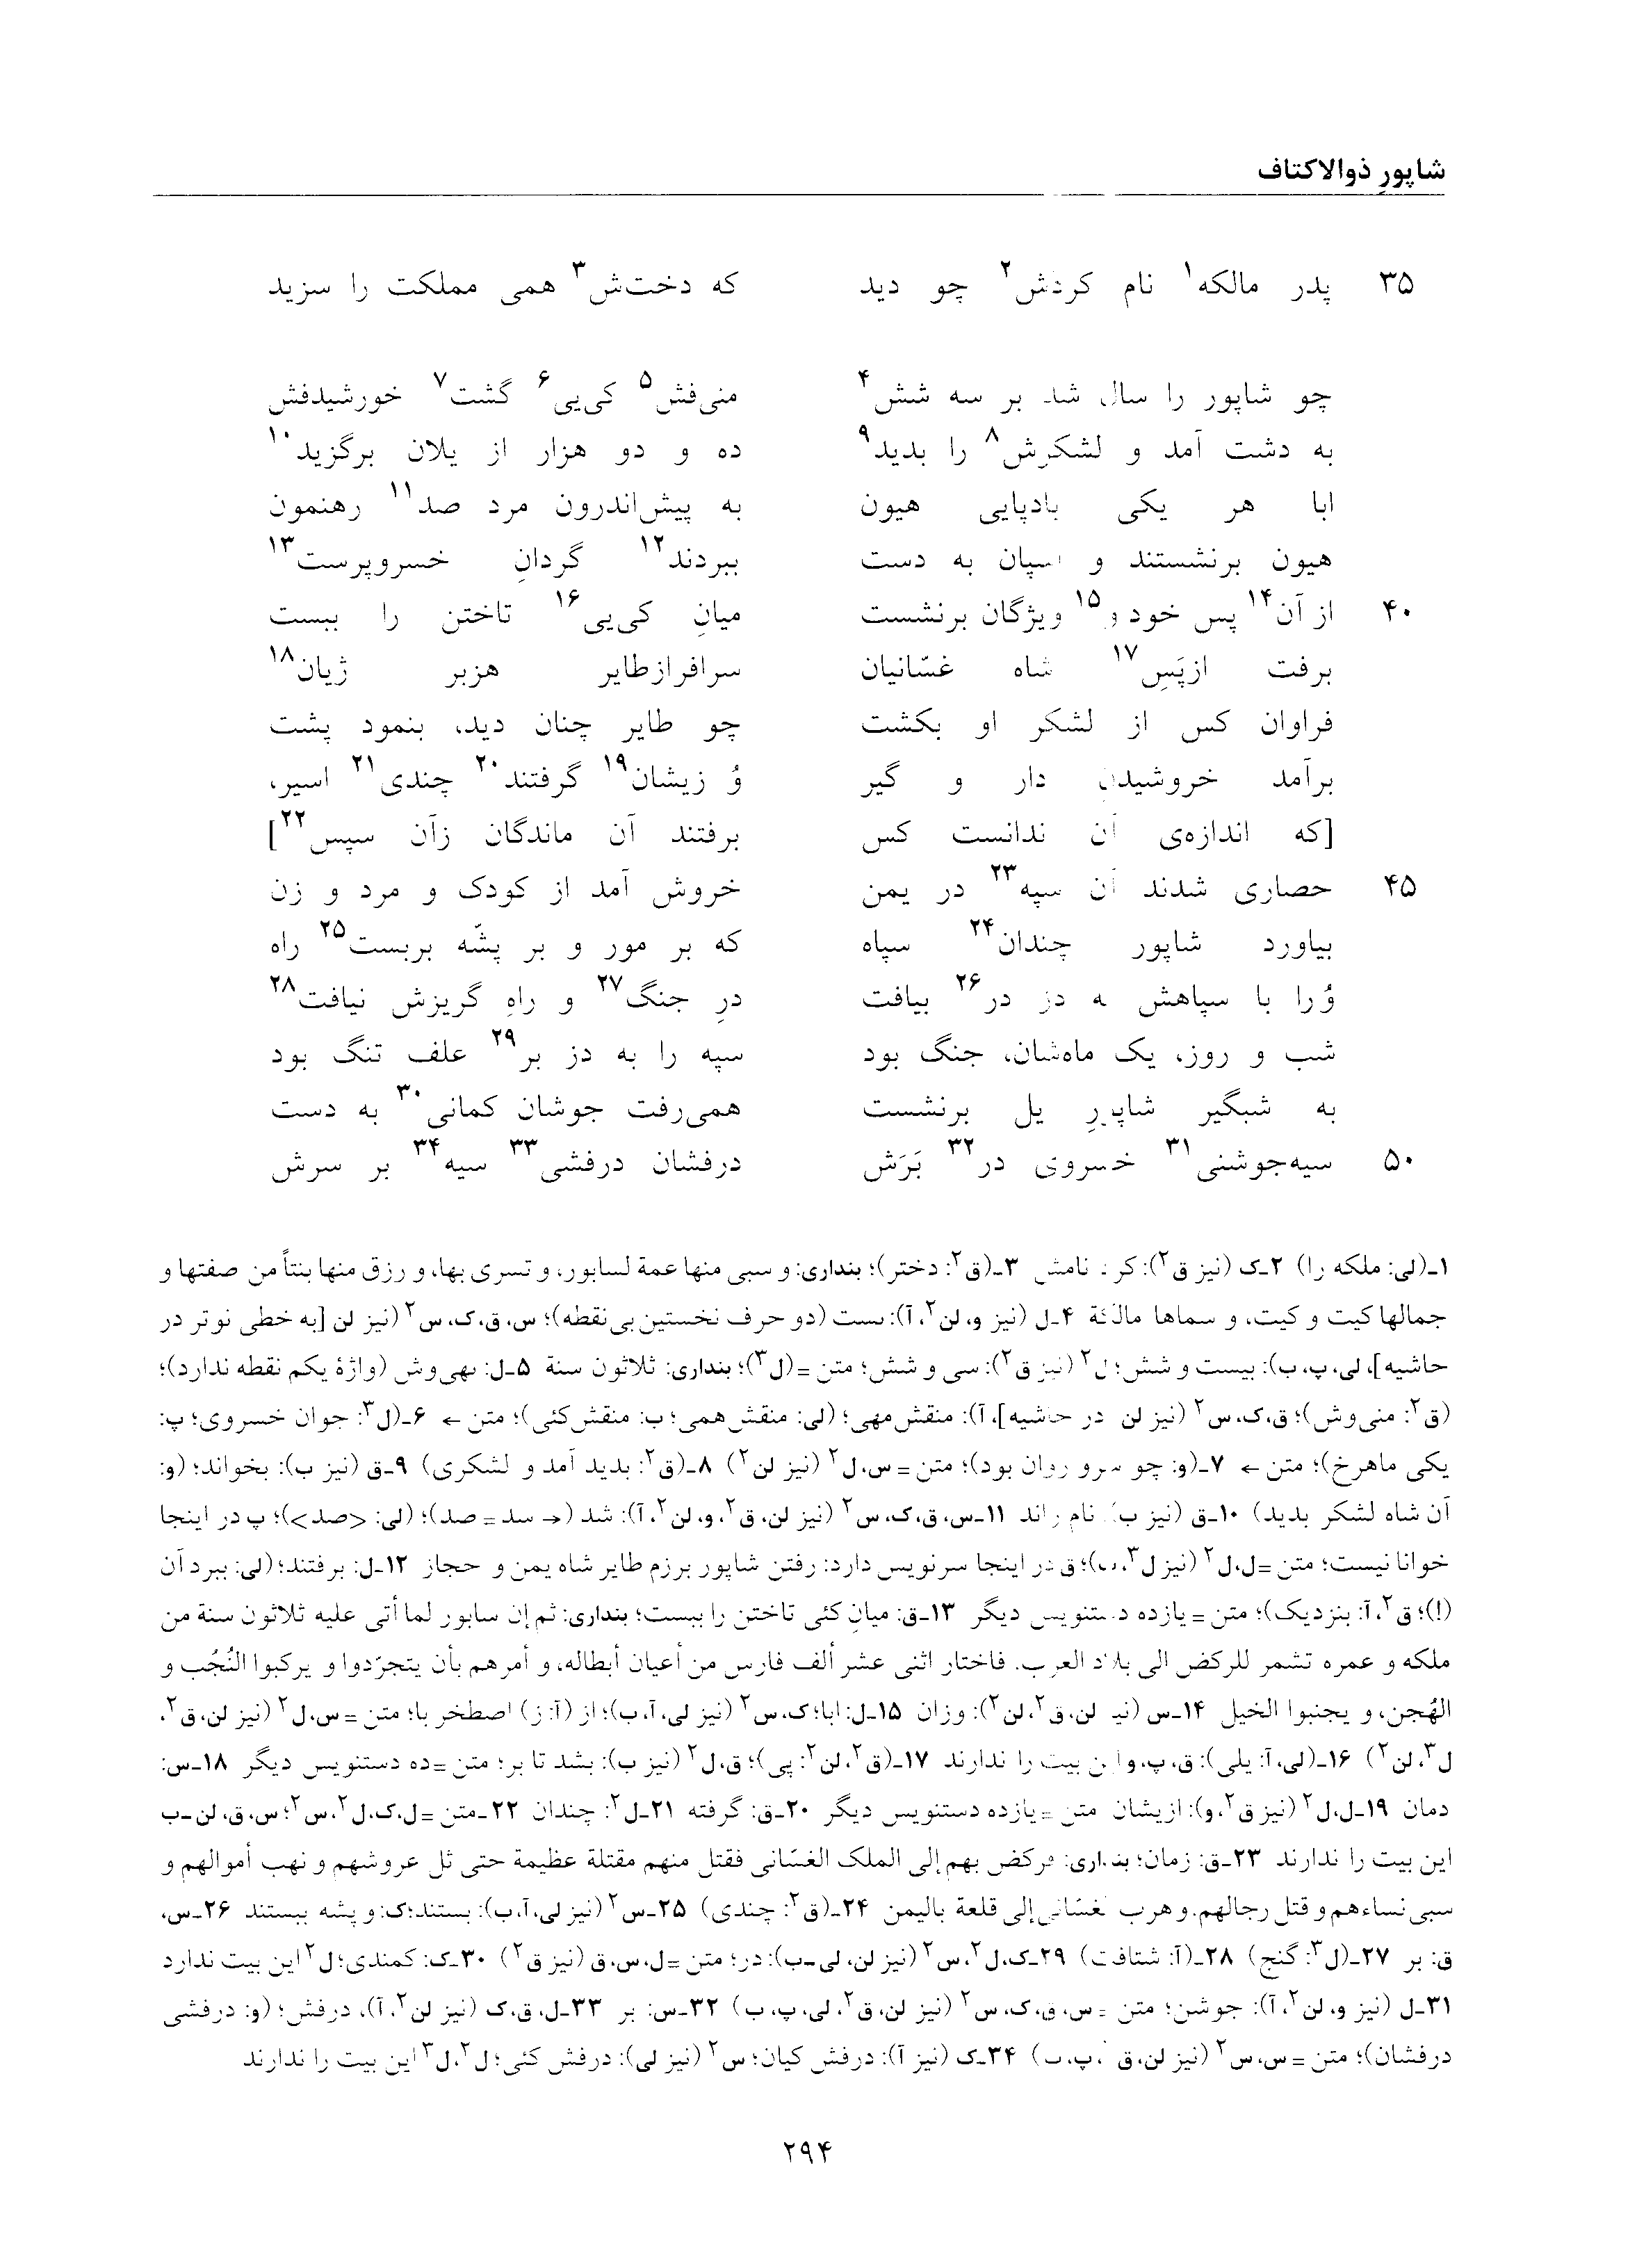 vol. 6, p. 294